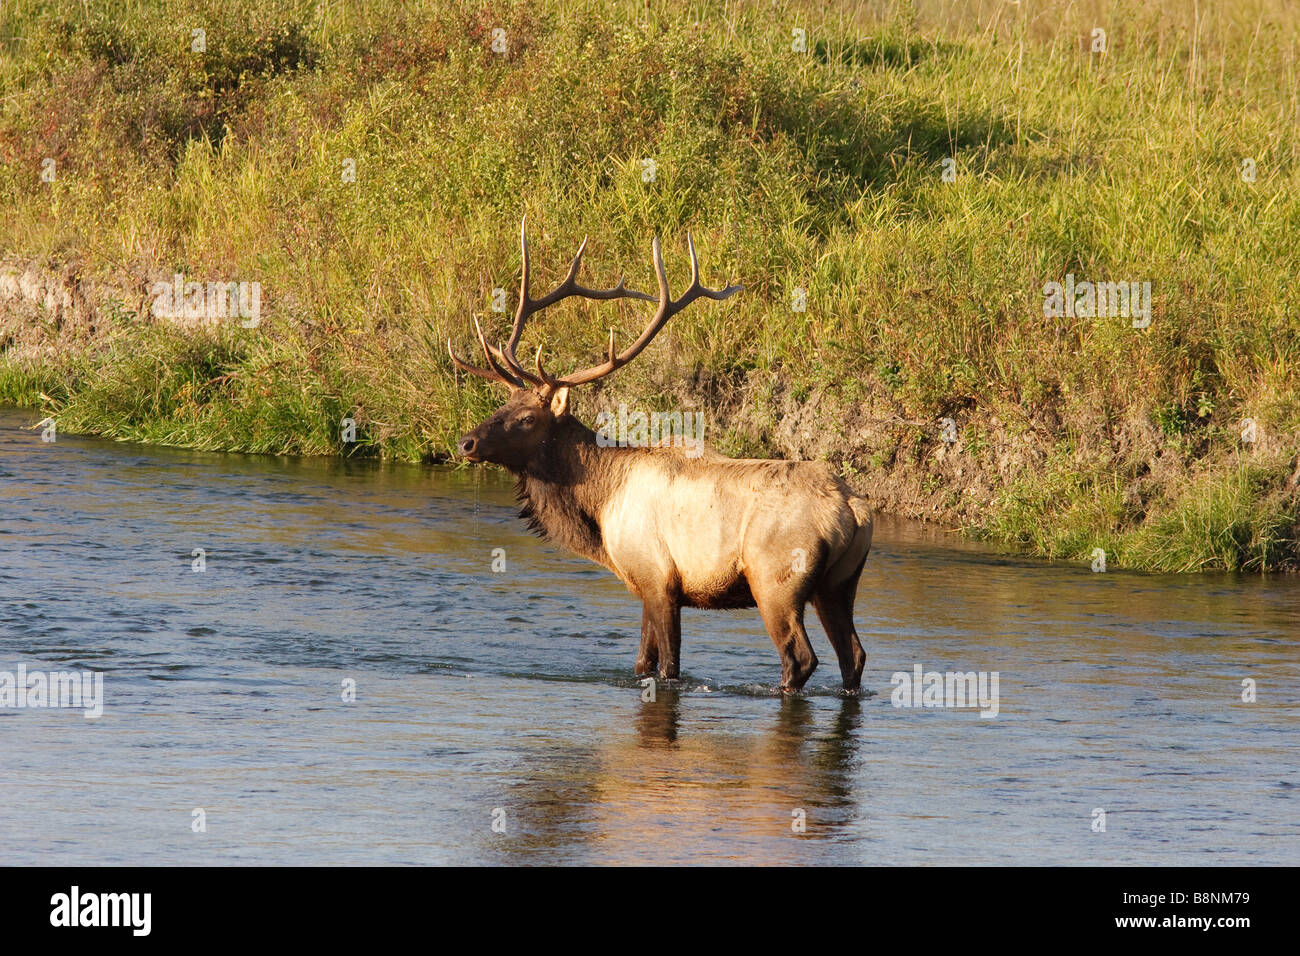 big bull elk in river Stock Photo